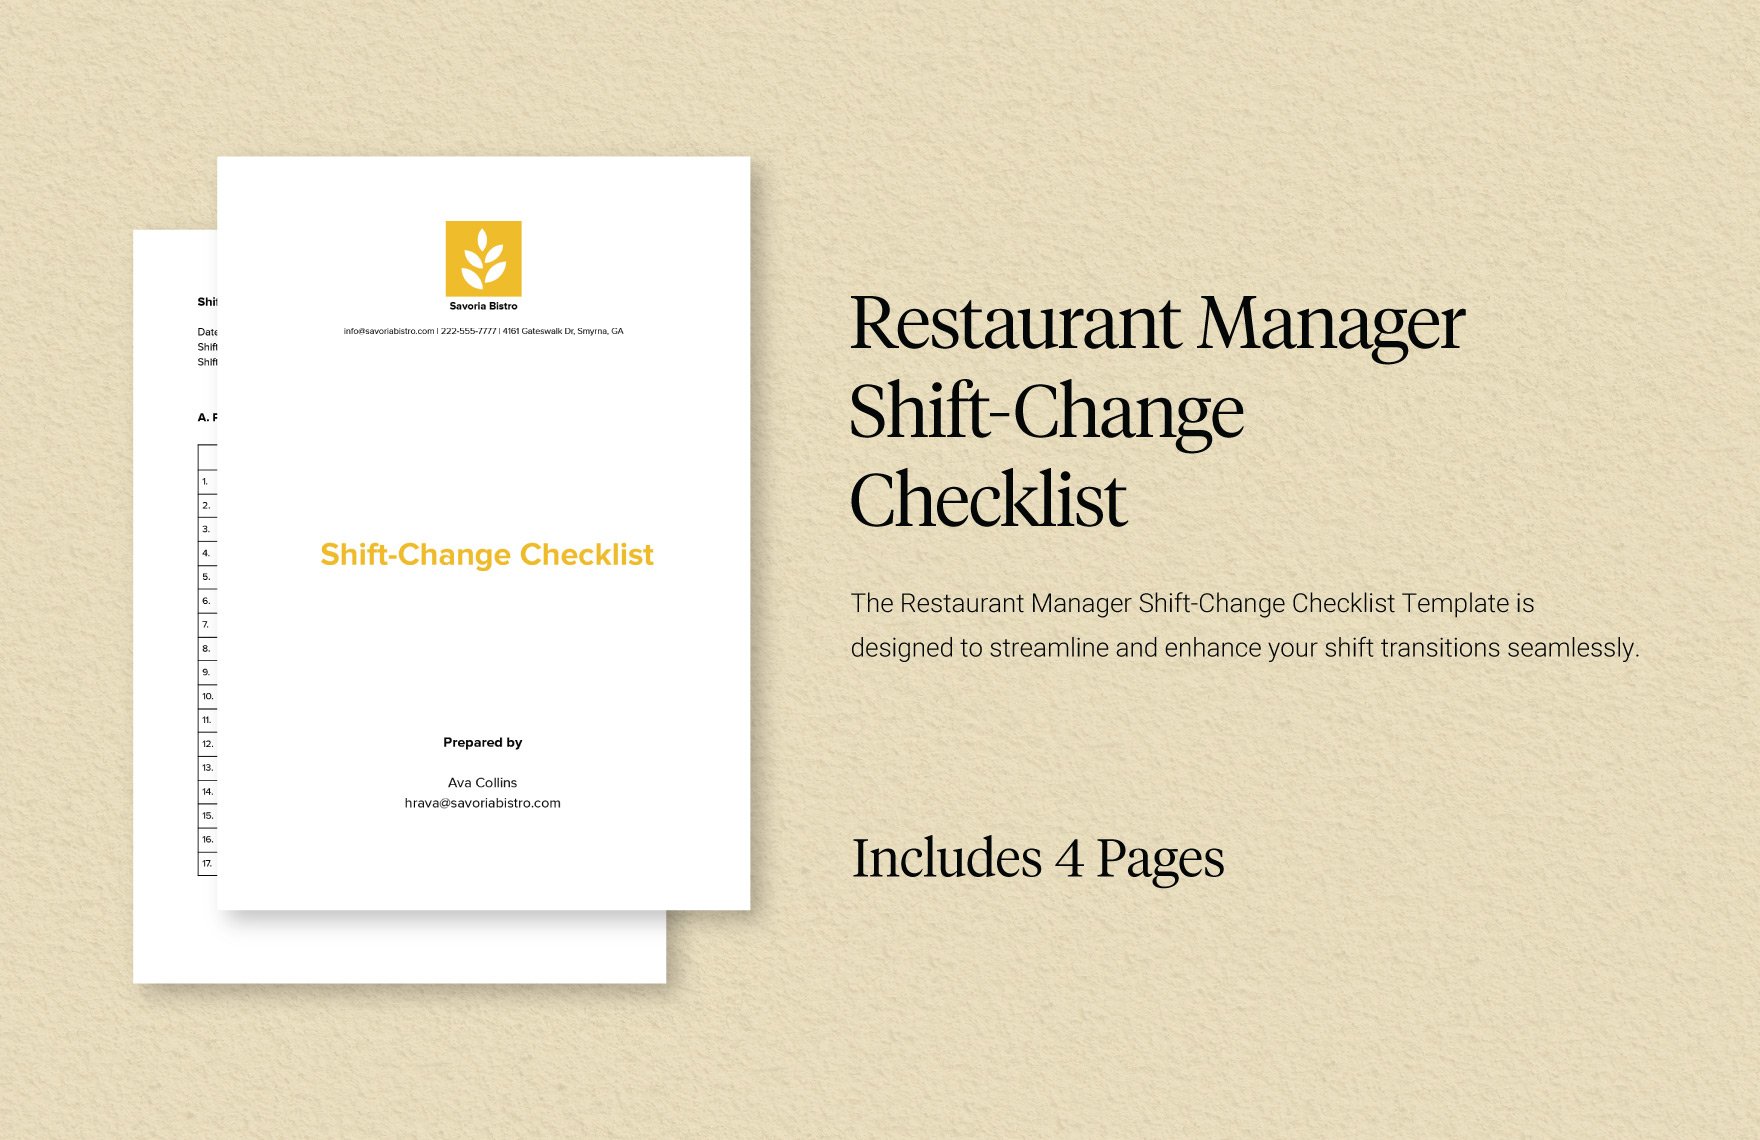 Restaurant Manager Shift-Change Checklist